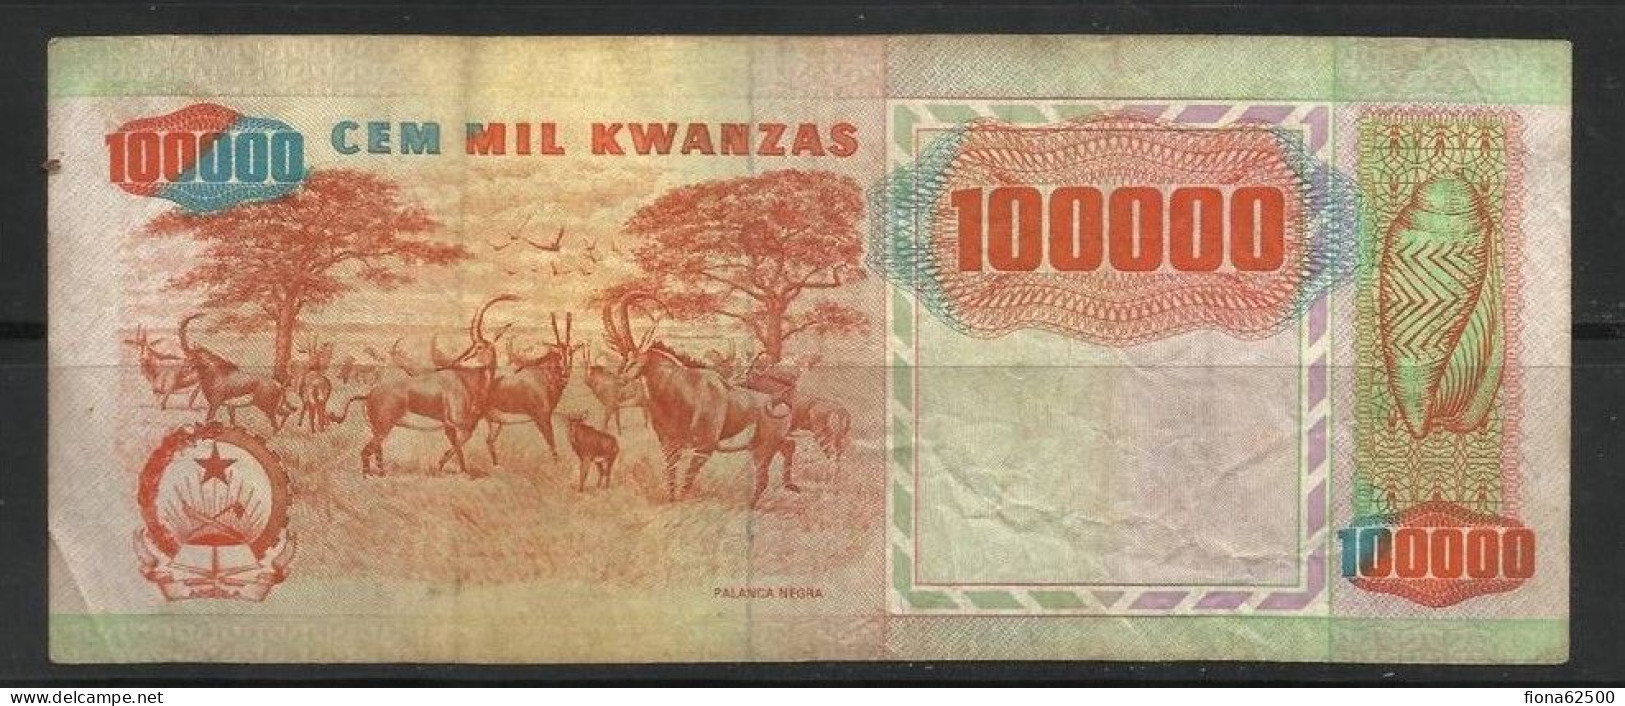 Angola 1991 100,000 Kwanzas ERROR . 10000 Au Lieu De 100000 . - Angola